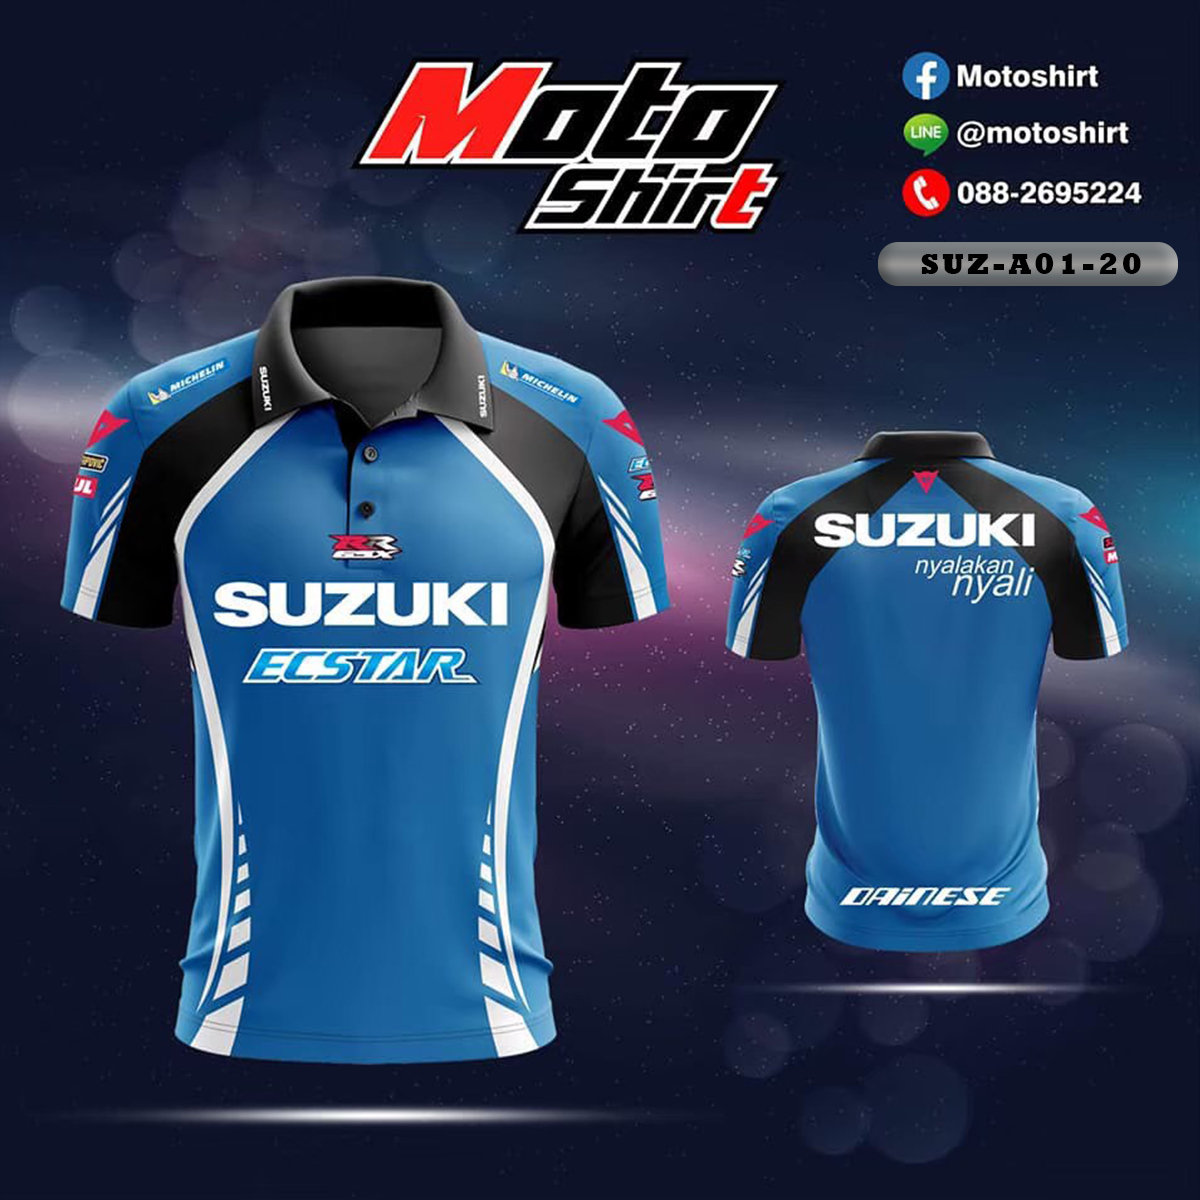 MOTOSHIRT MOTOGP SUZUKI SUZ-A01-20